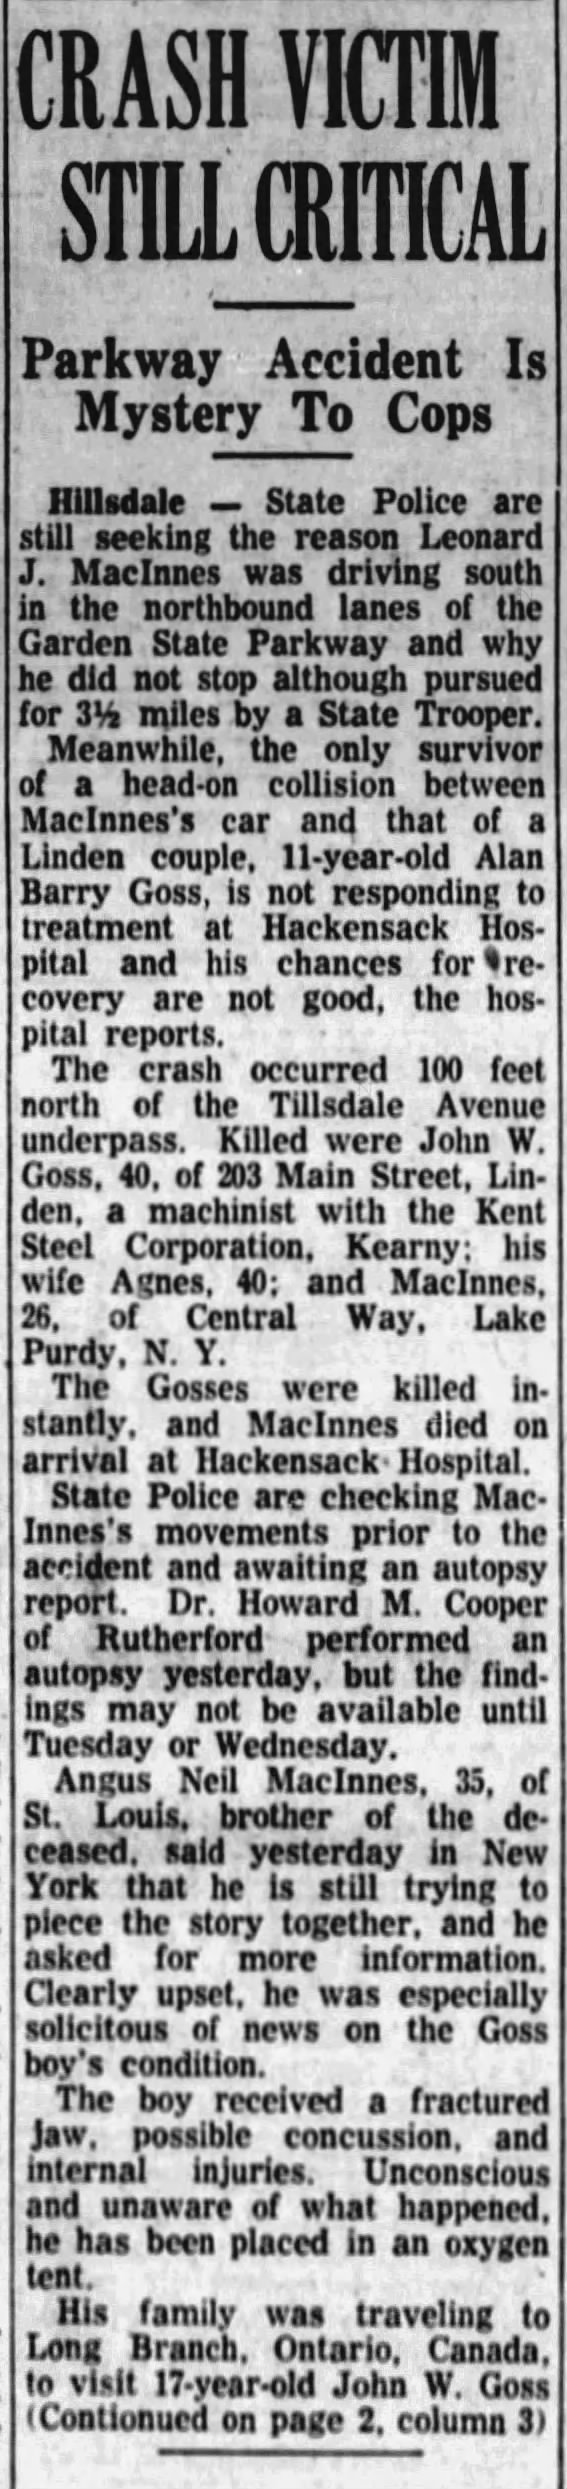 Crash victim still critical - 16 April 1960